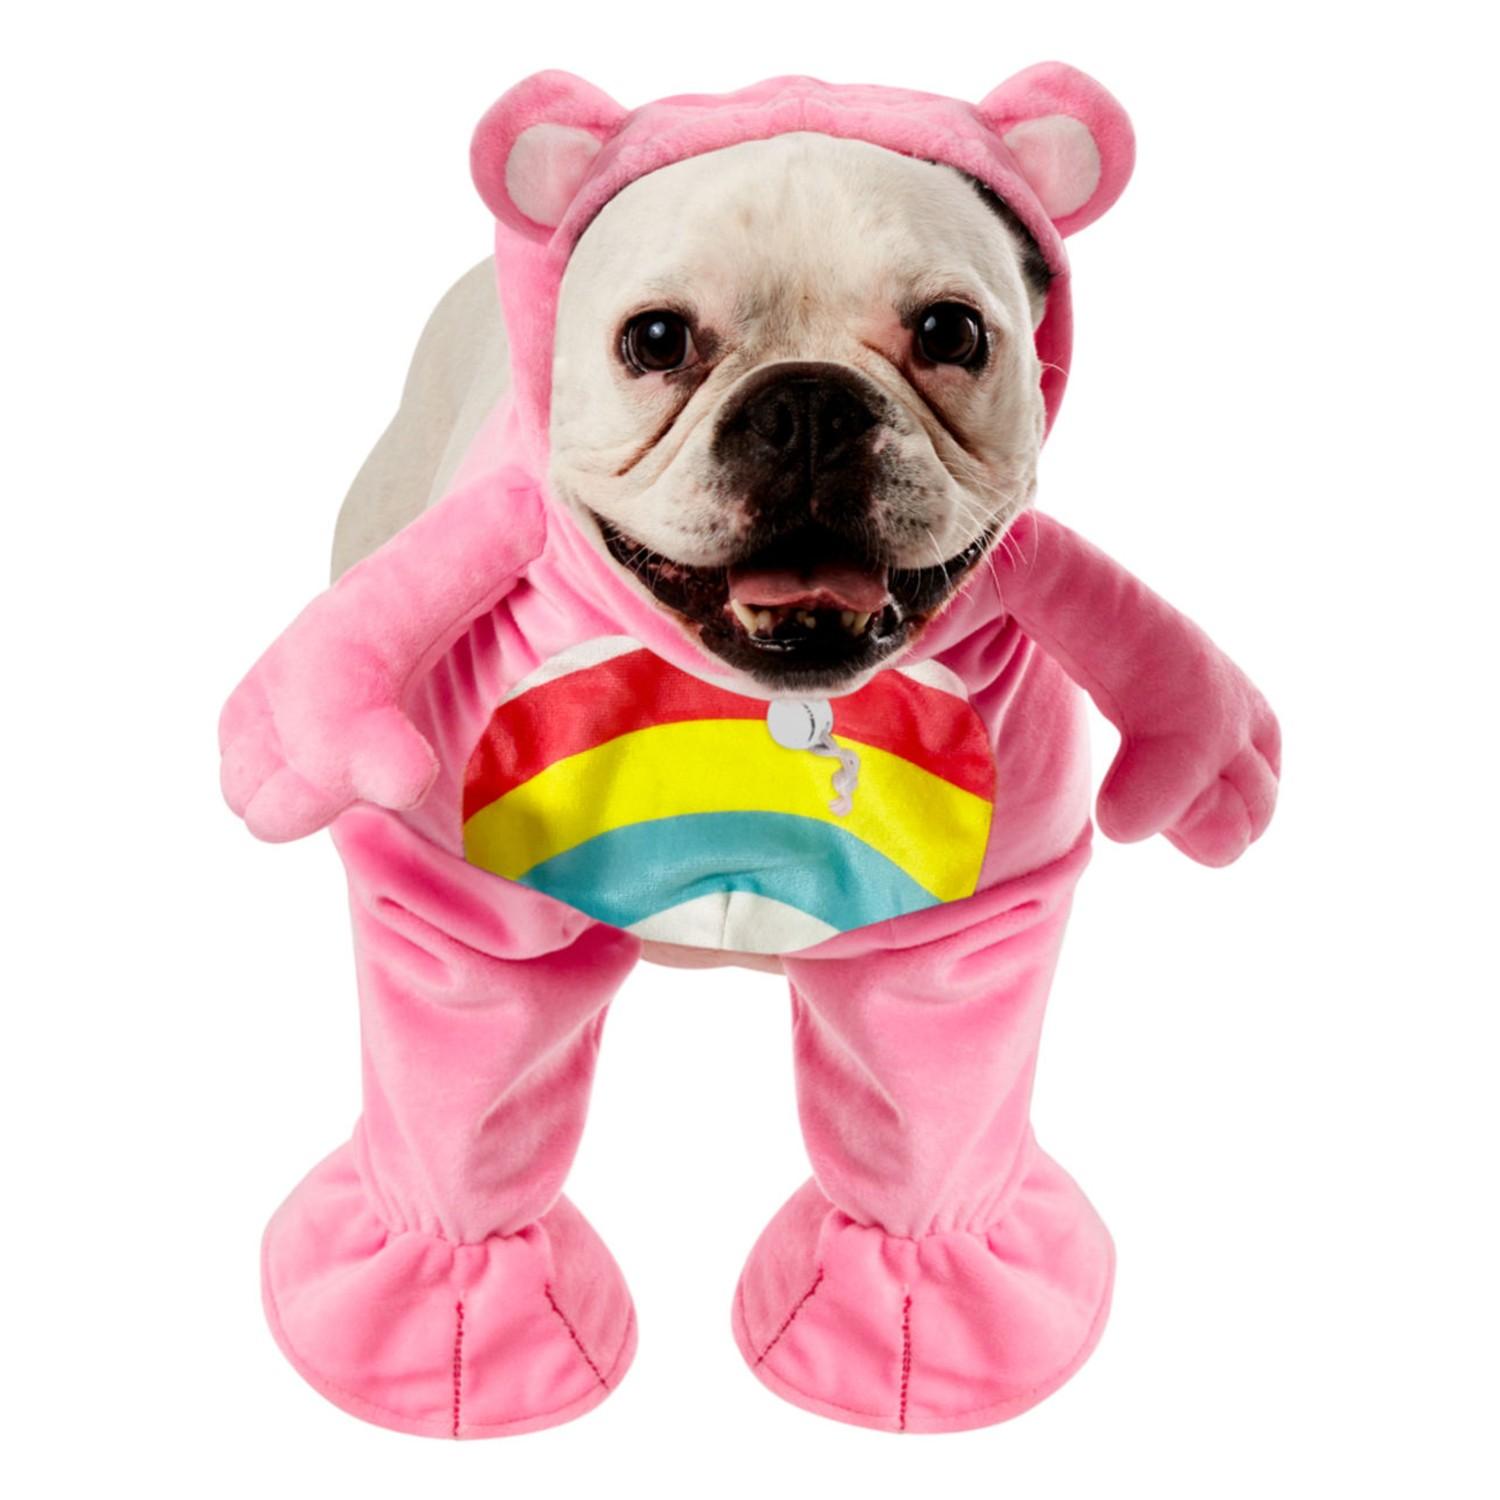 Care Bears Dog Costume by Rubie's - Cheer Bear